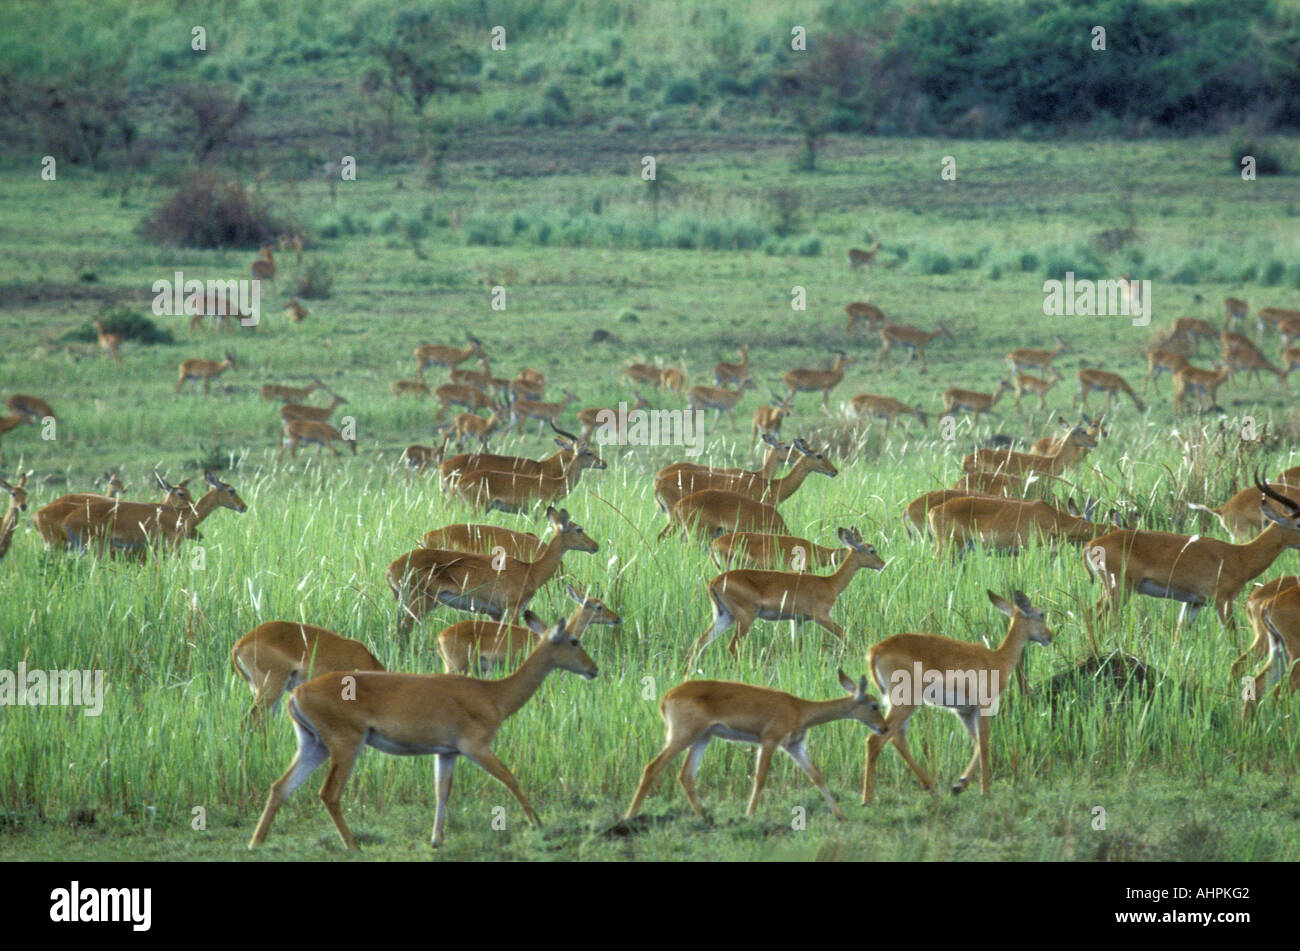 Eine erhebliche Herde von Uganda Kob in offenes Grasland Ruwenzori oder Queen Elizabeth National Park Uganda Ostafrika Stockfoto